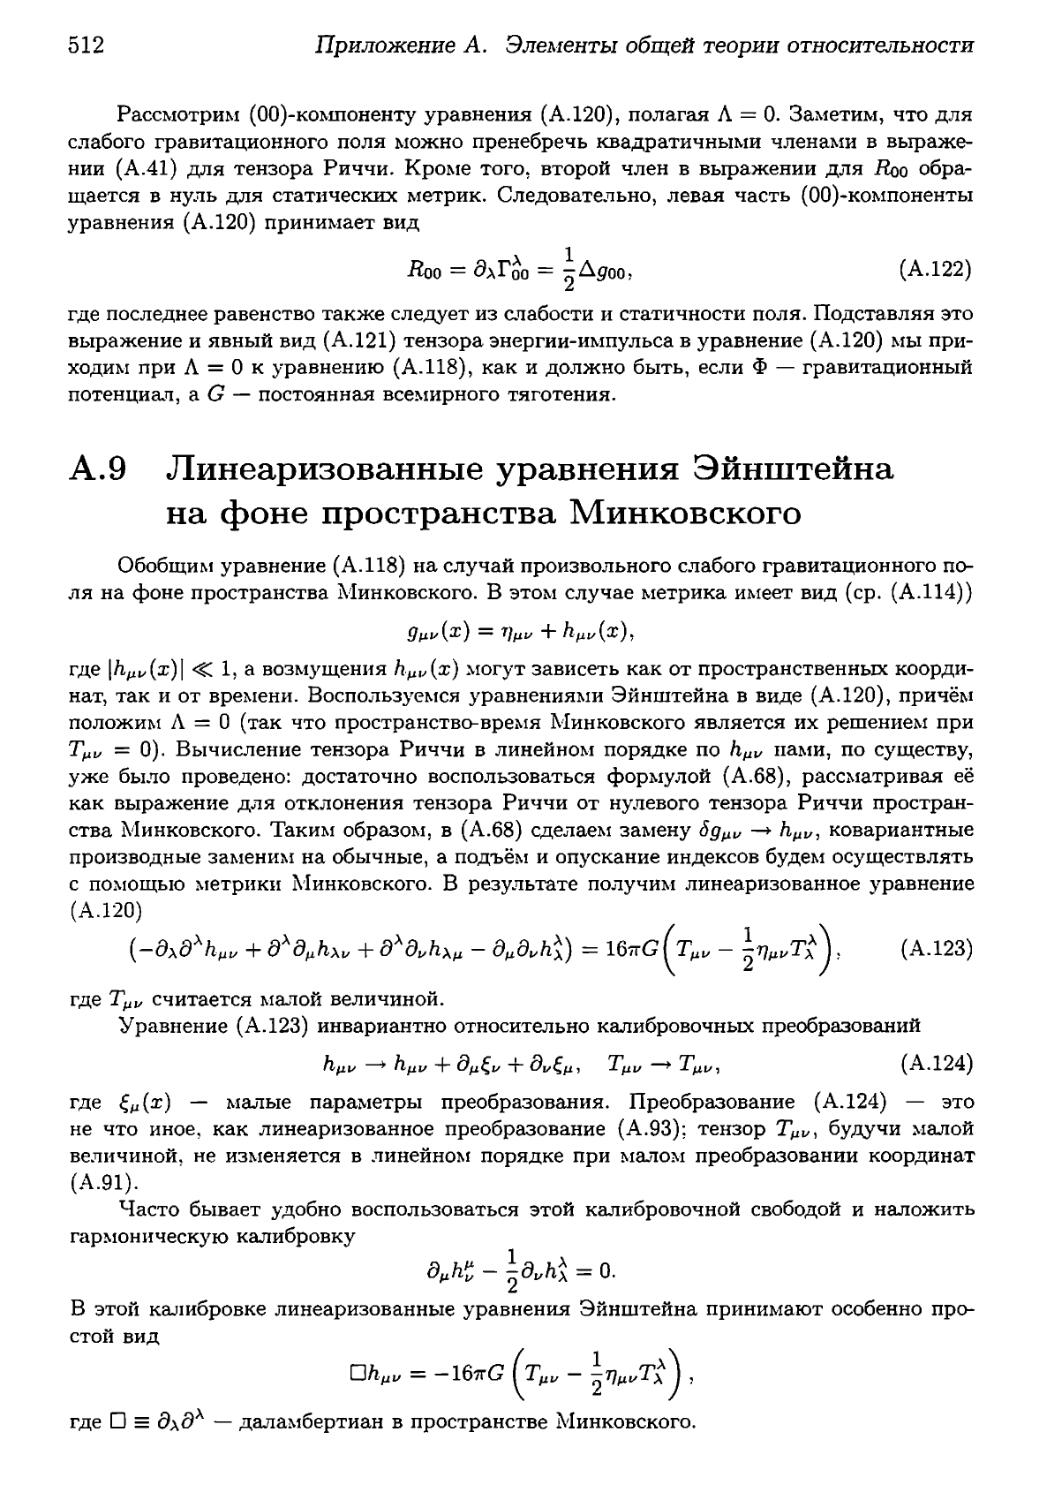 А.9. Линеаризованные уравнения Эйнштейна на фоне пространства Минковского